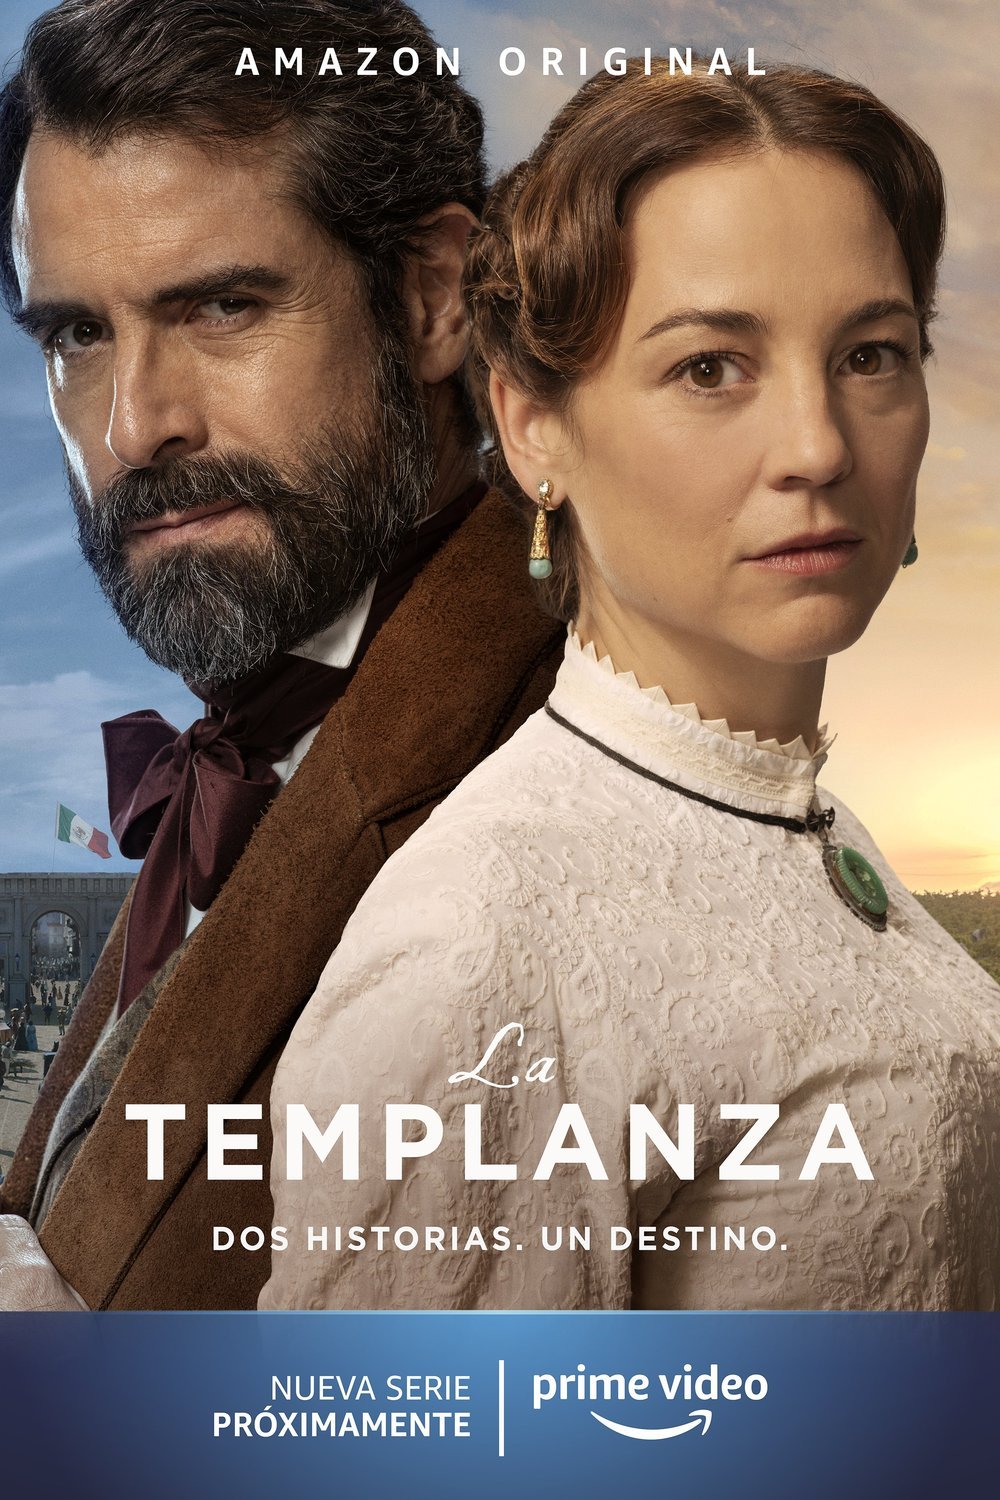 L'affiche originale du film La Templanza en espagnol